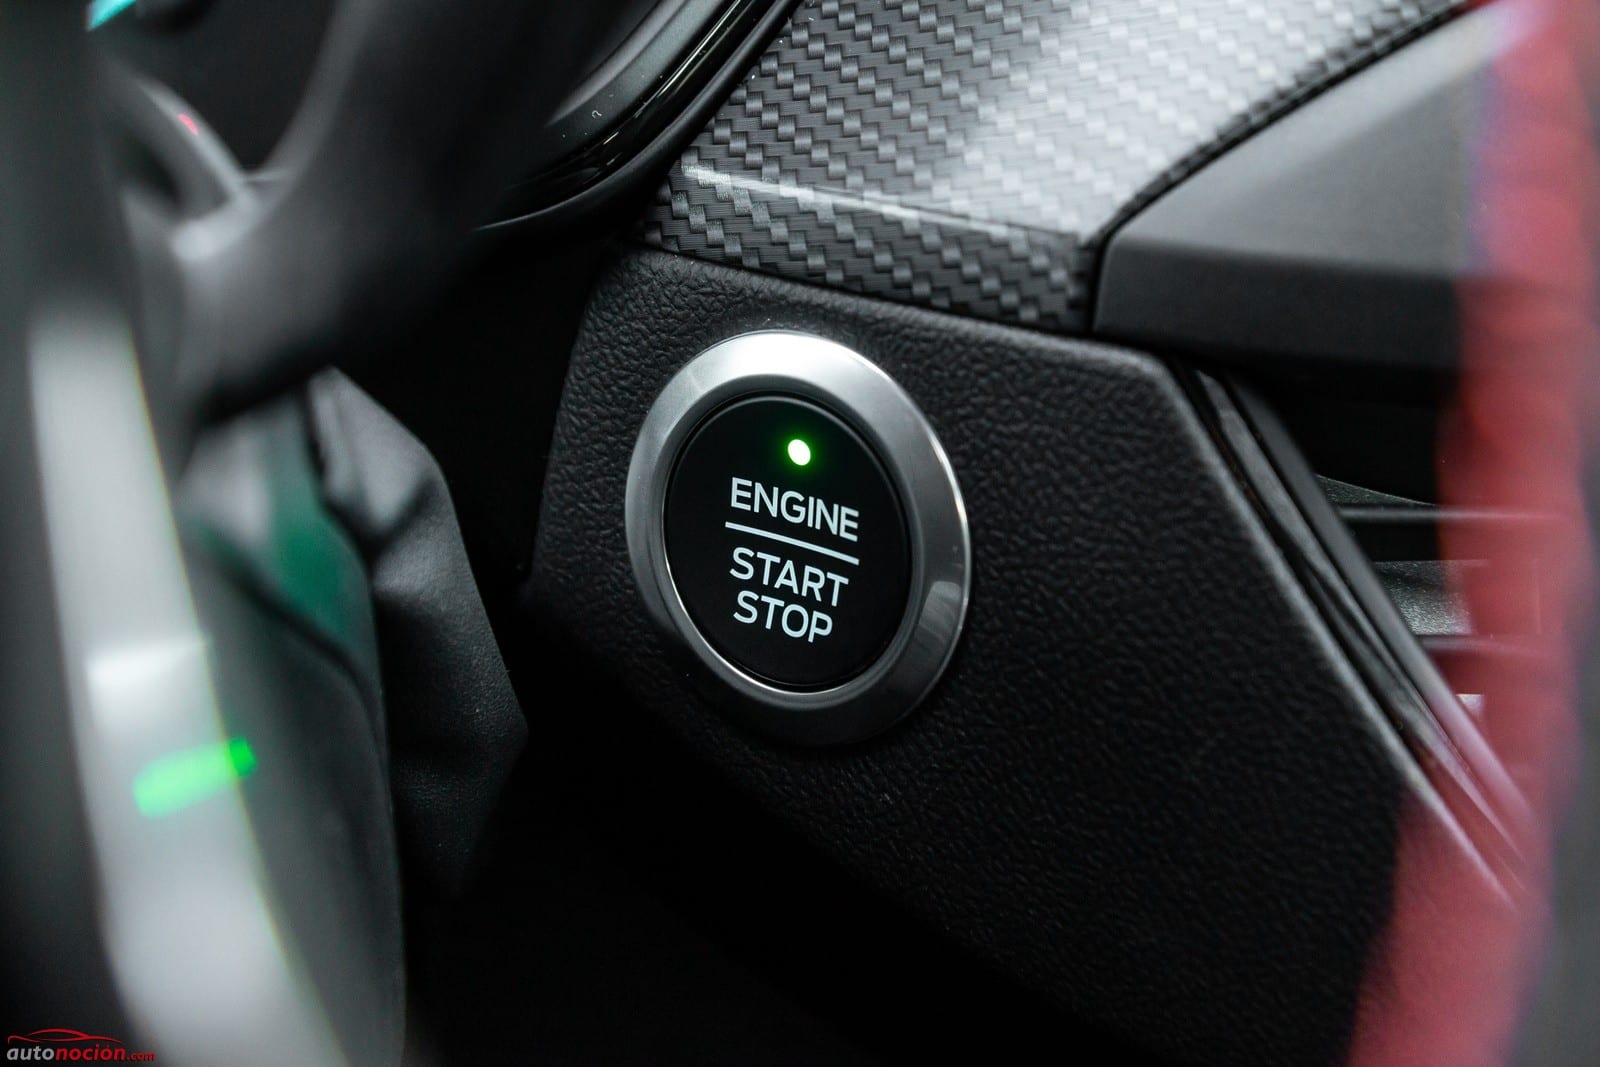 Opinión y prueba Ford Focus EcoBoost 182 CV gasolina 2019